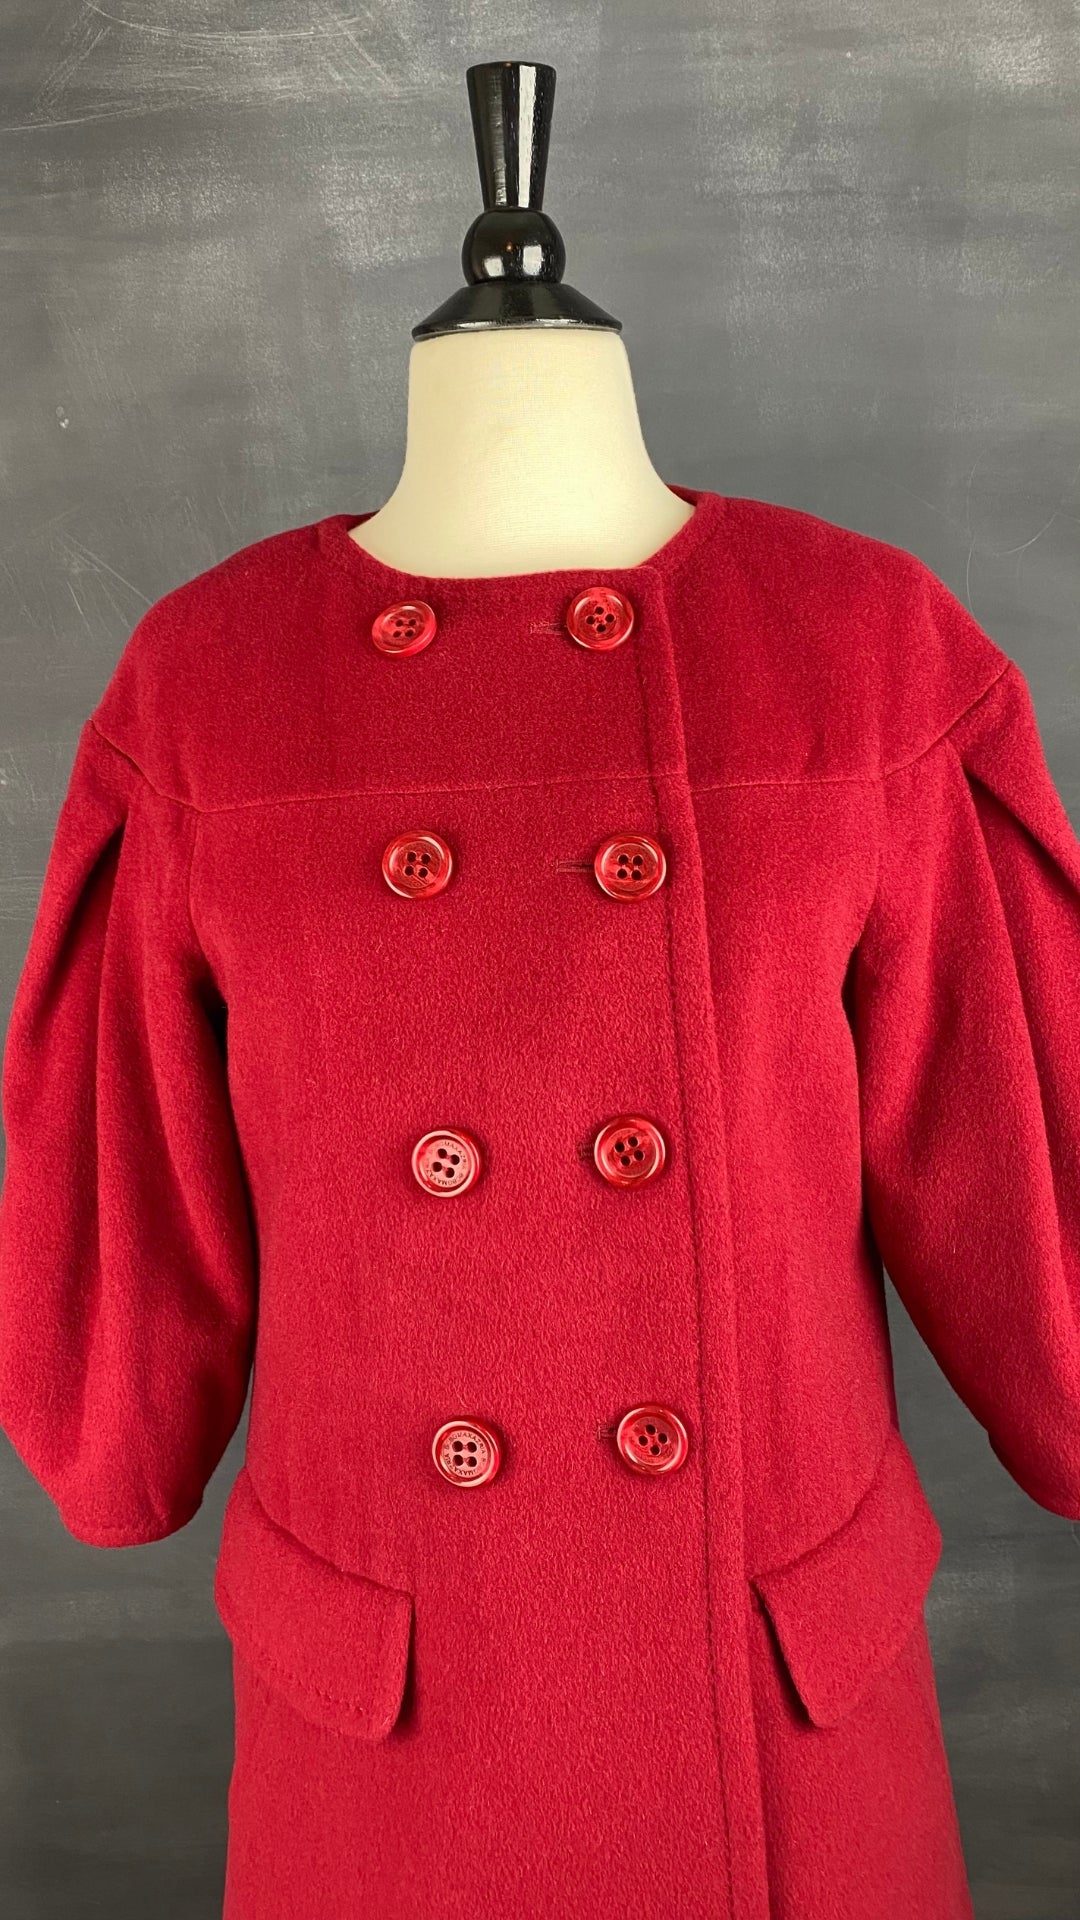 Manteau assez long en lainage rouge, manches ballons, BCBGMAXAZRIA, vue de près des boutons.